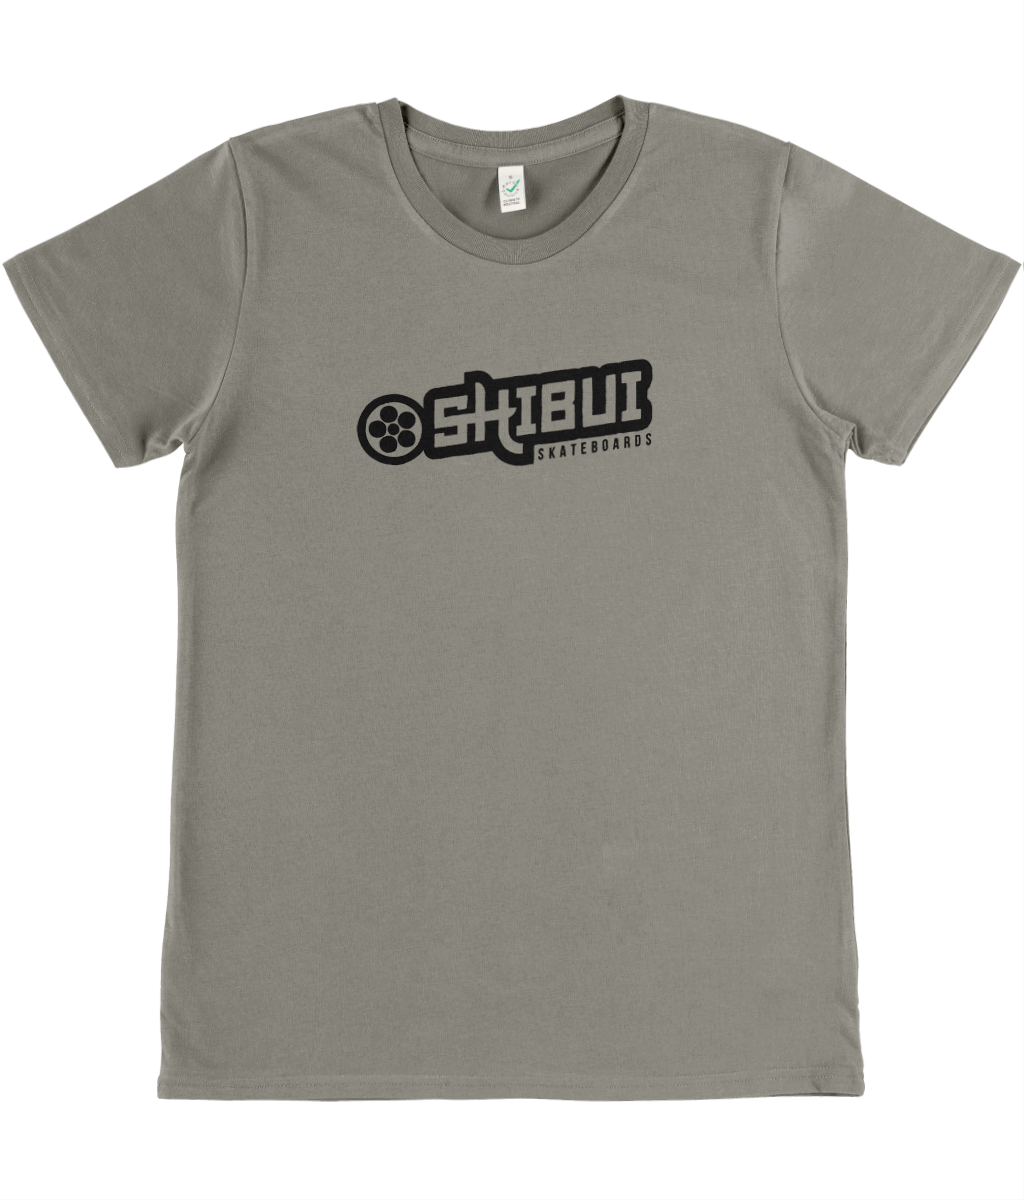 Womens Shibui Skate logo T-Shirt